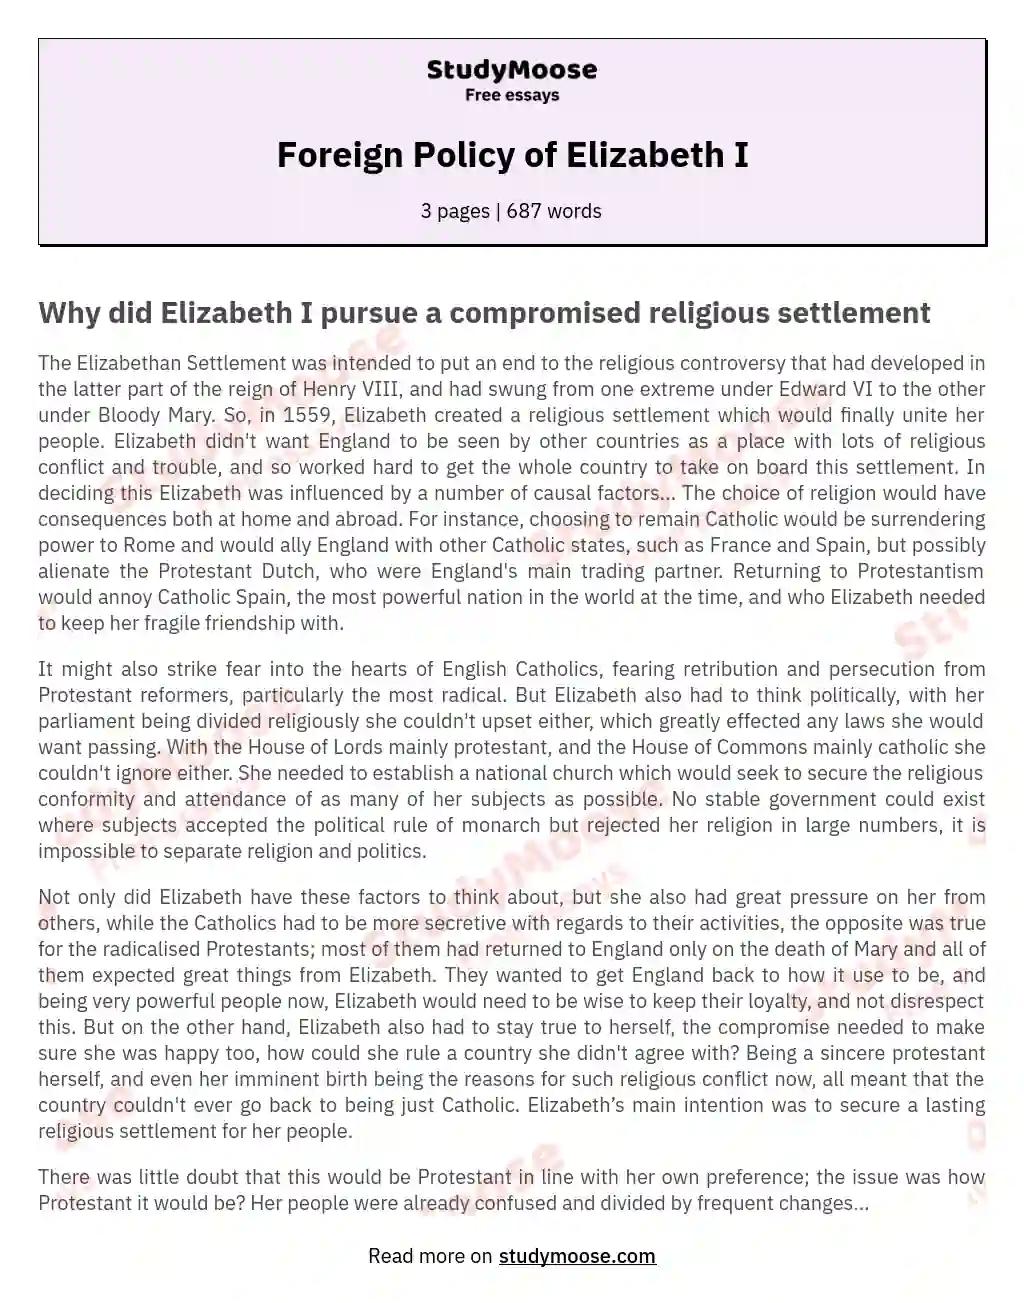 Foreign Policy of Elizabeth I essay